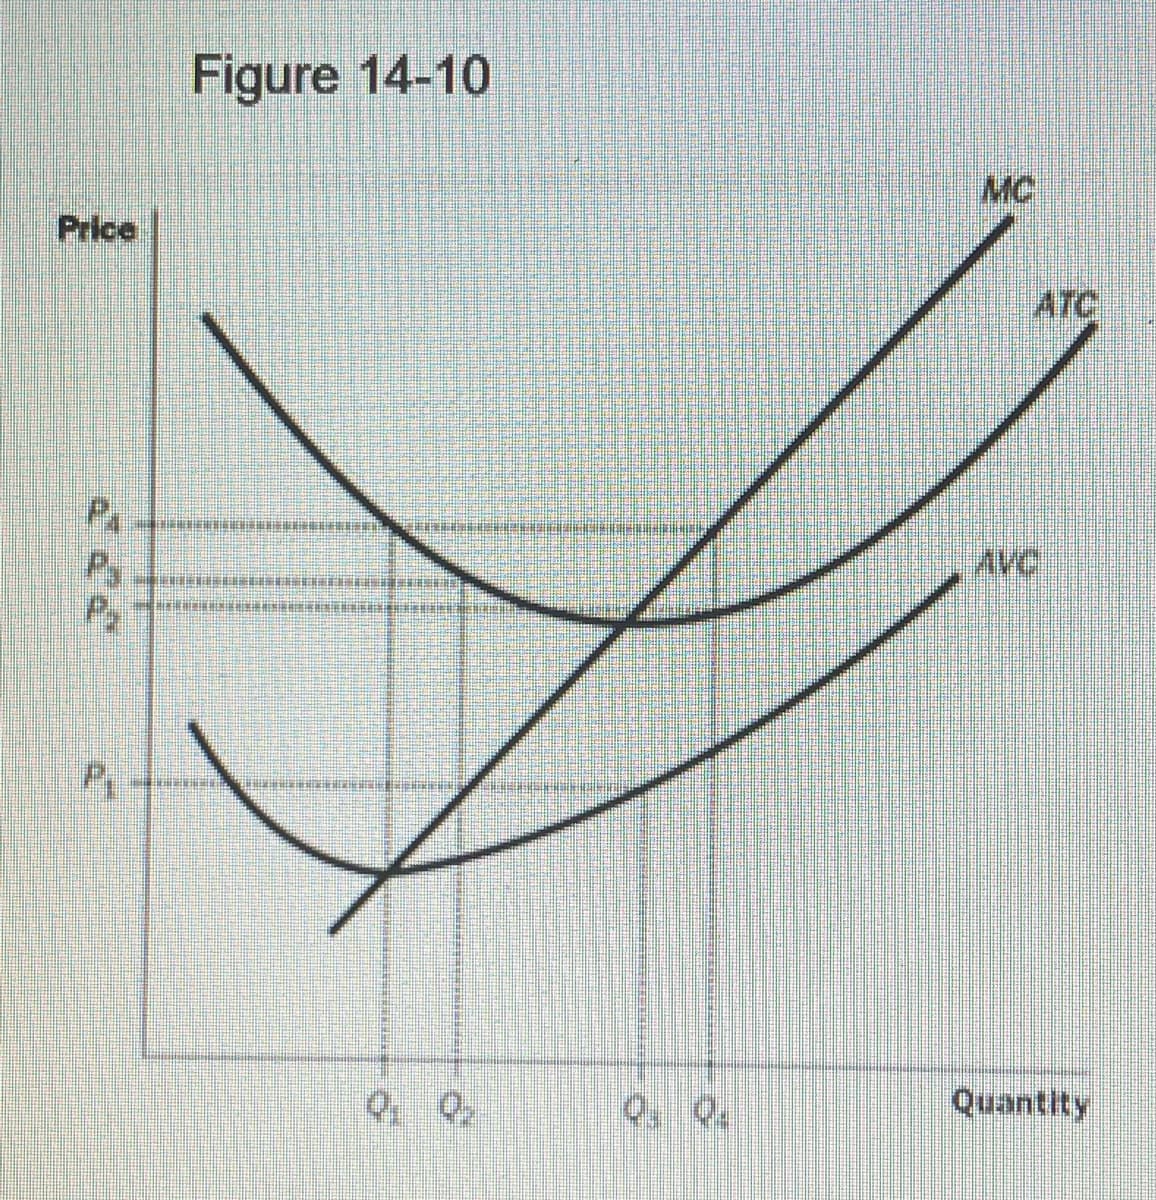 Price
P
P
PH
Figure 14-10
QQ
ATC
Quantity